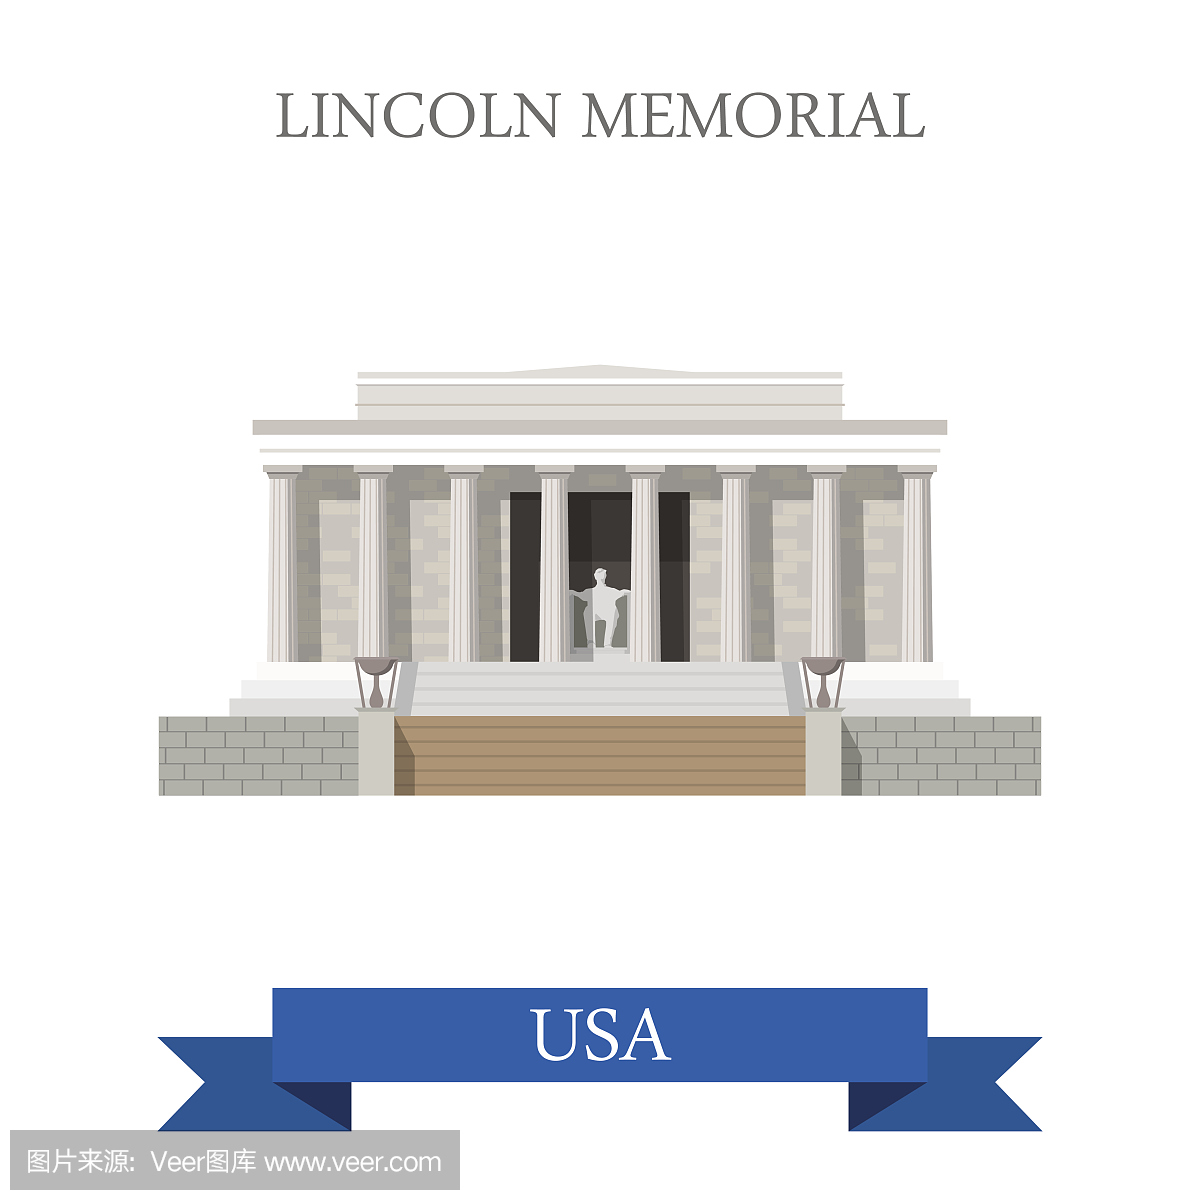 林肯纪念馆在华盛顿美国。平面卡通风格历史景